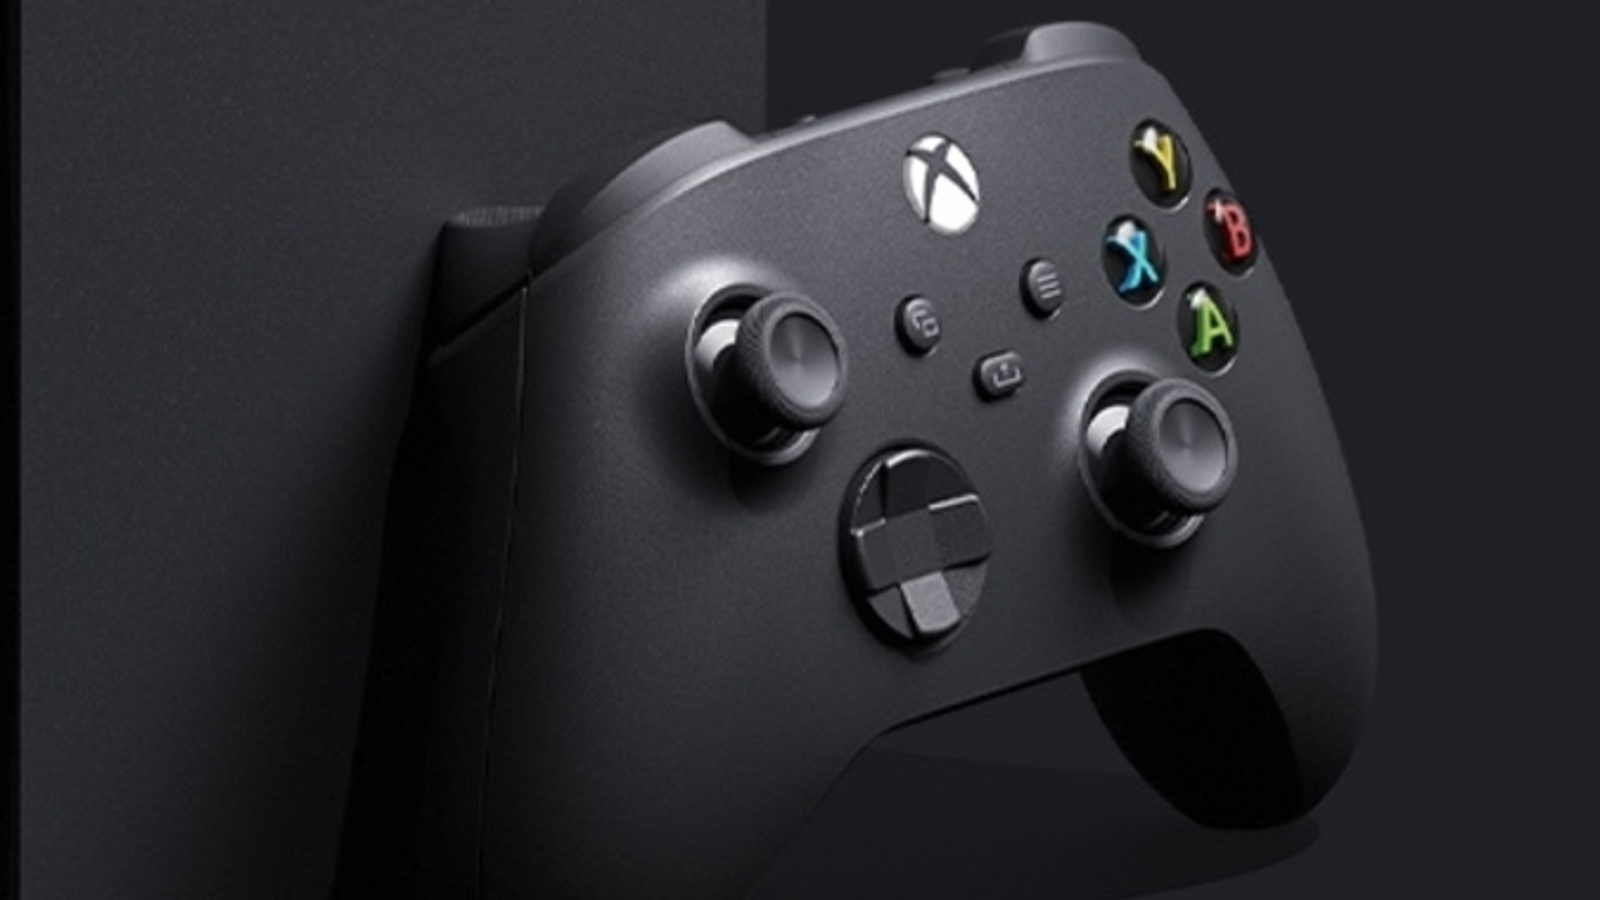 Exclusivos temporários do PS5 pela Bethesda chegarão ao Xbox Game